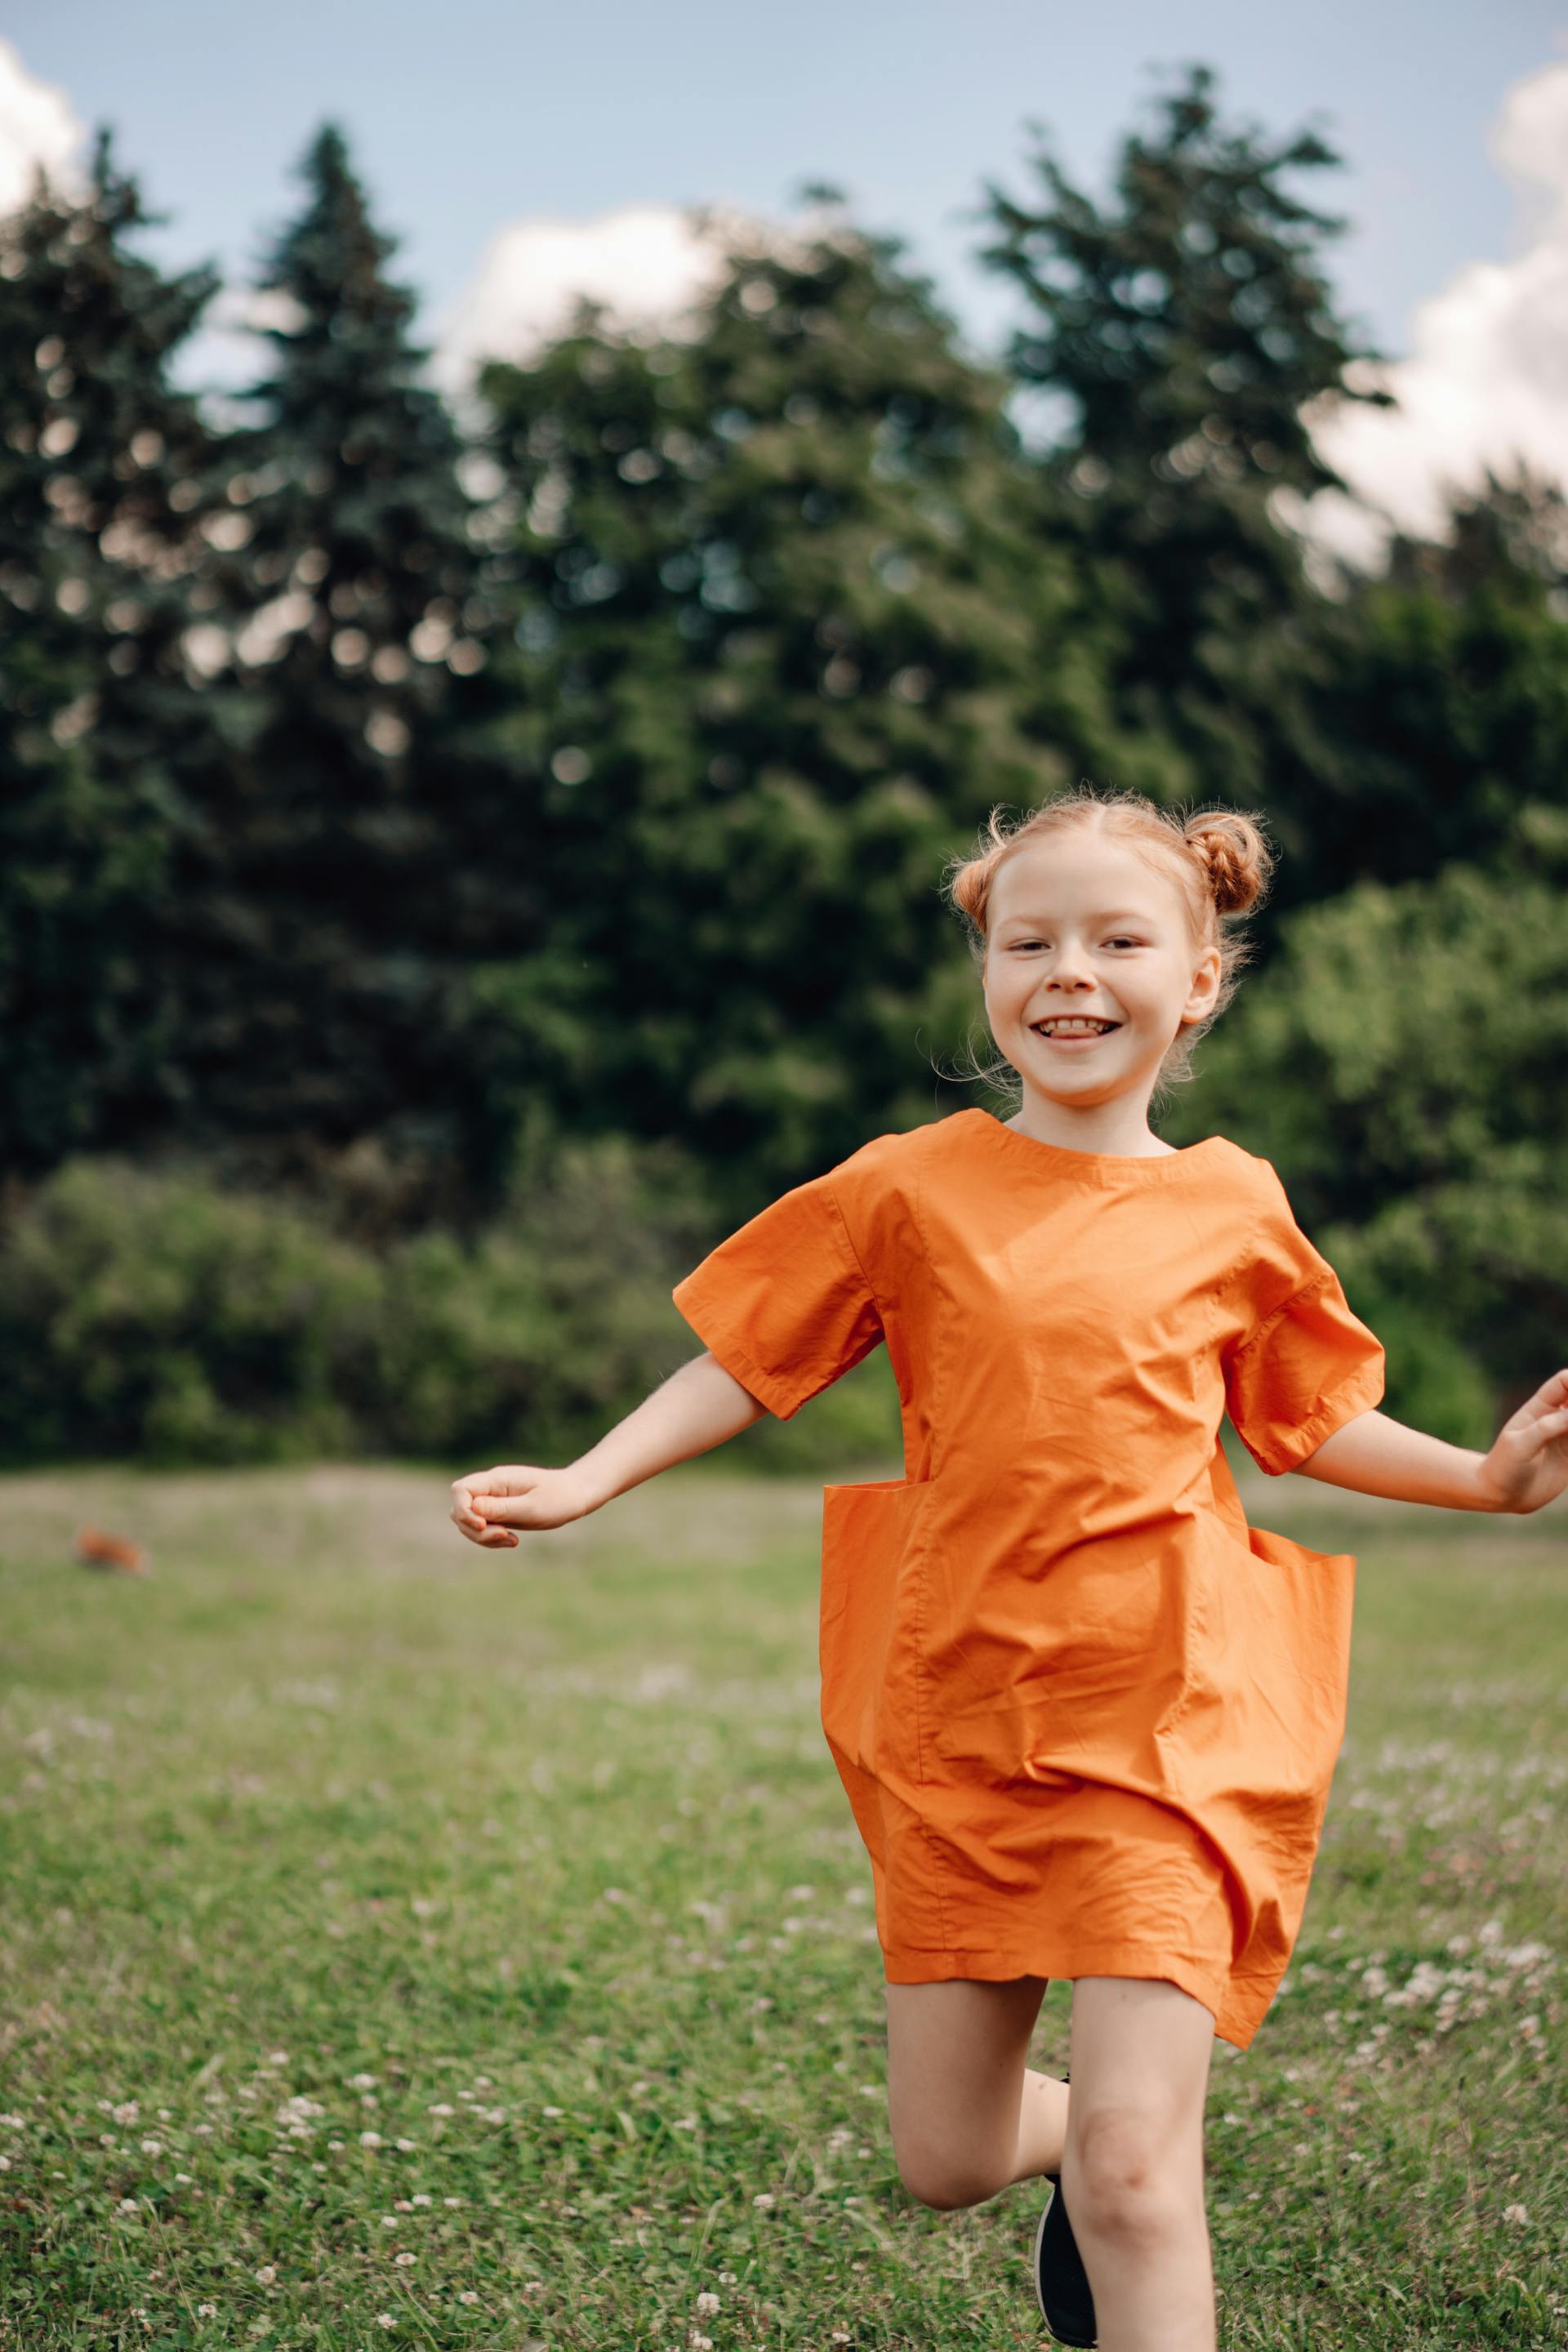 A little girl running | Source: Pexels